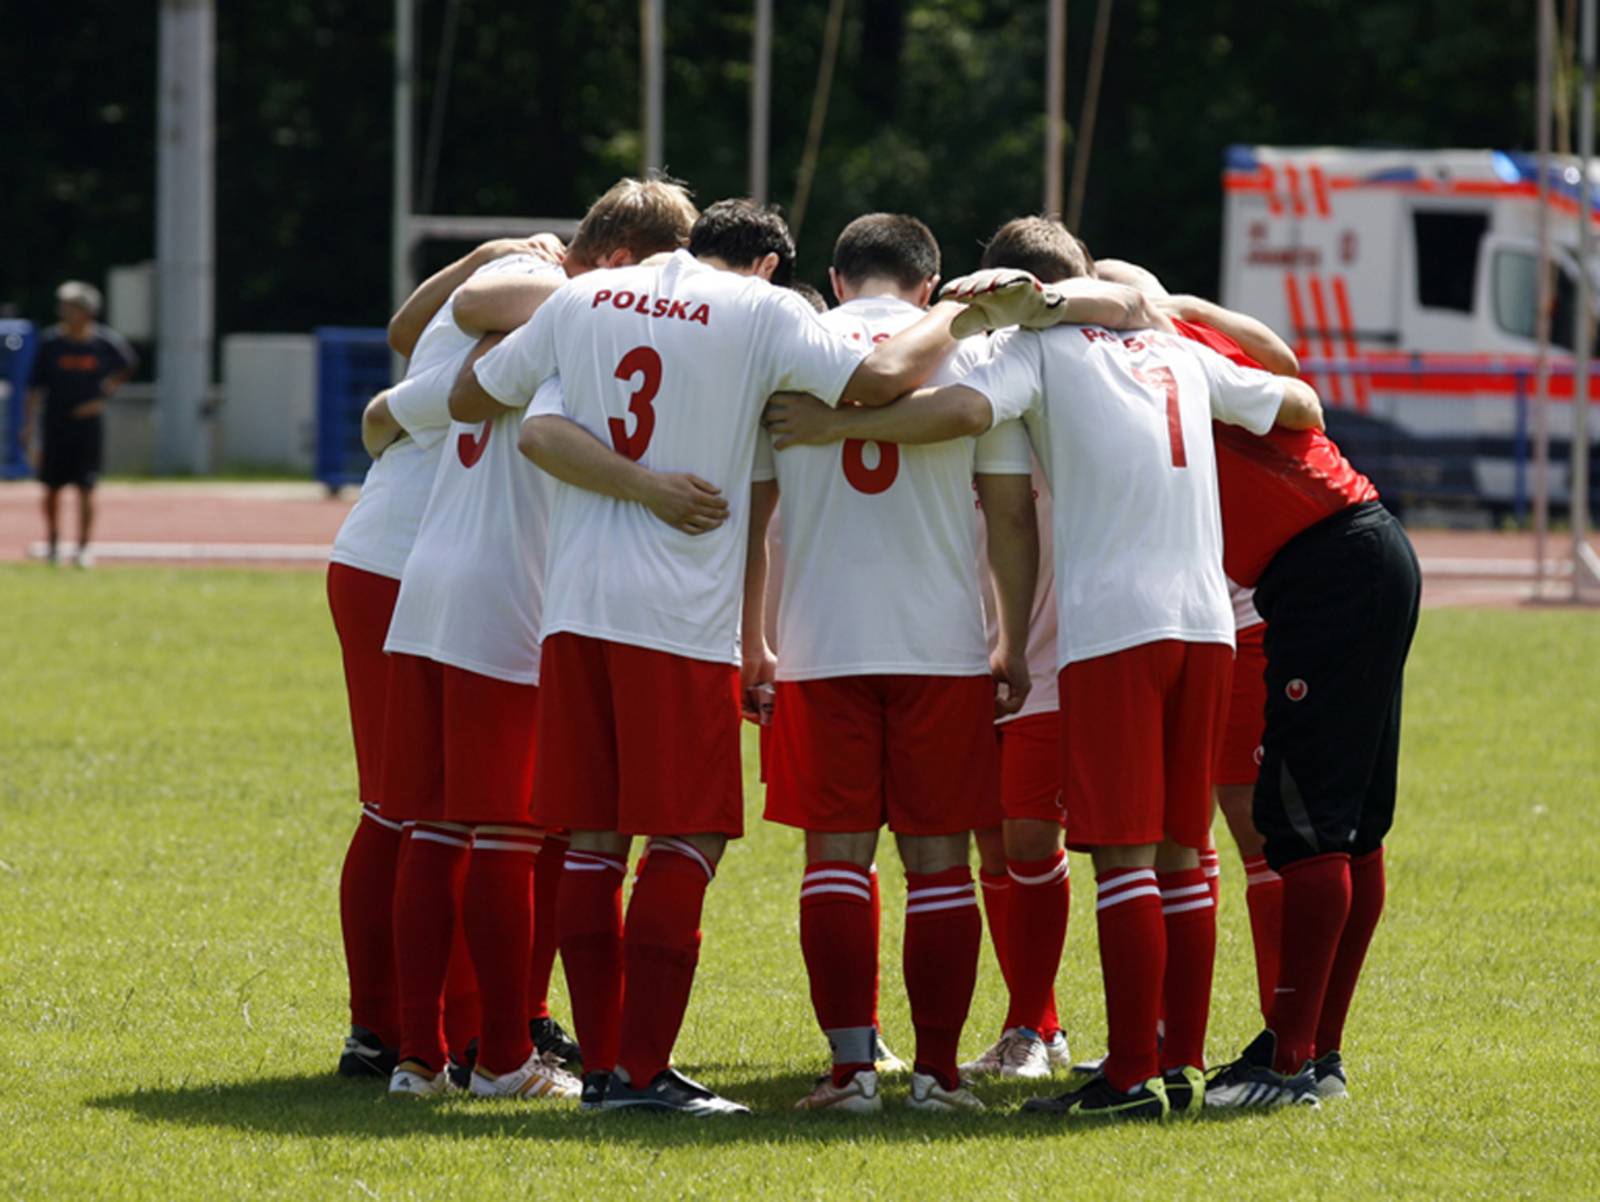 Eine Aufnahme vom Internationalen Hannover Cup 2012: Das polnische Team stimmt sich auf ein Spiel ein